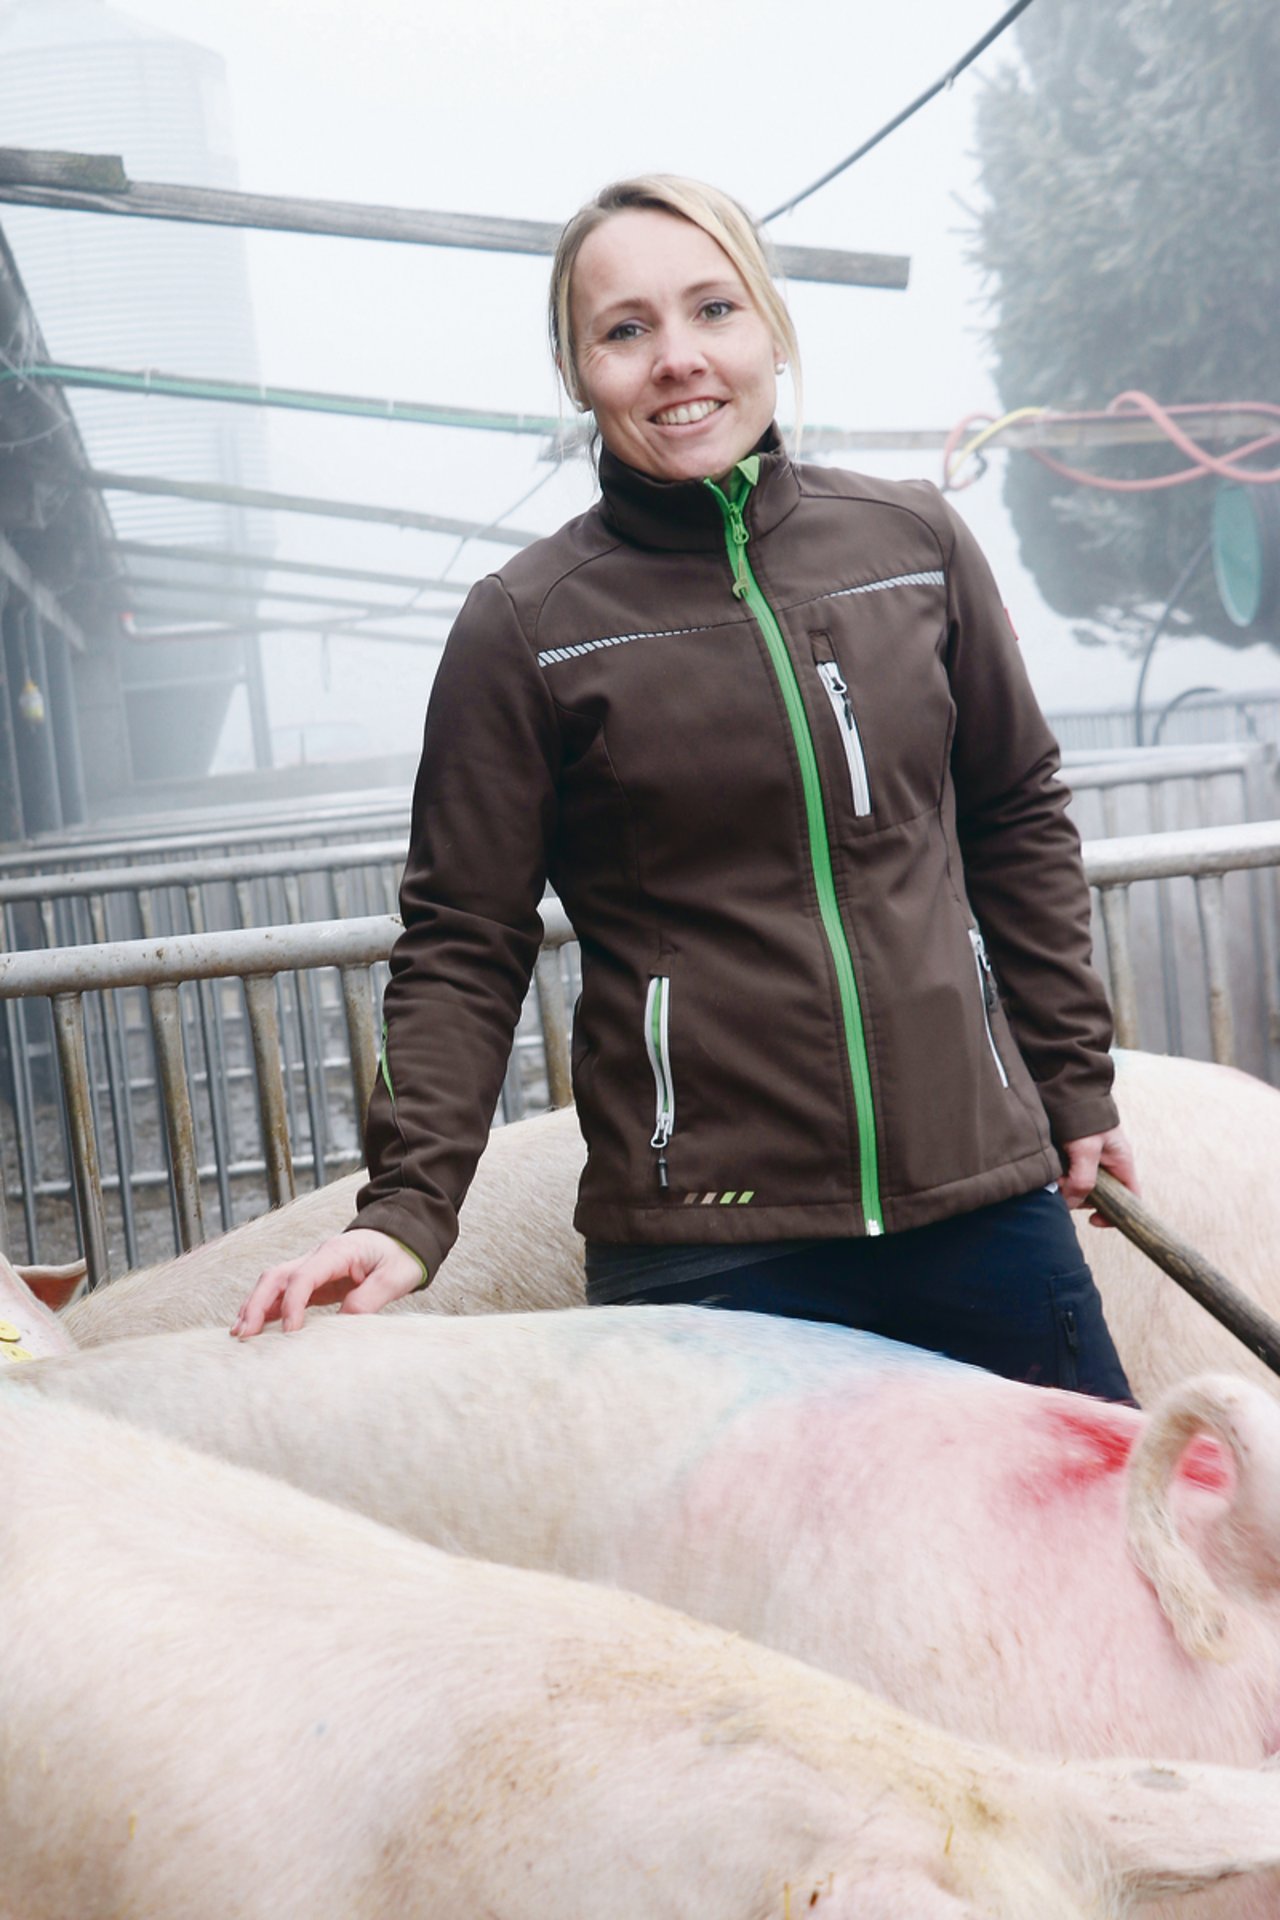 Schweinehaltung ist ein wichtiger Betriebszweig. Marina Schärli ist froh, dass sie dabei viel vom Fachwissen und der Erfahrung ihres Vaters profitieren kann. (Bild Ruth Aerni)